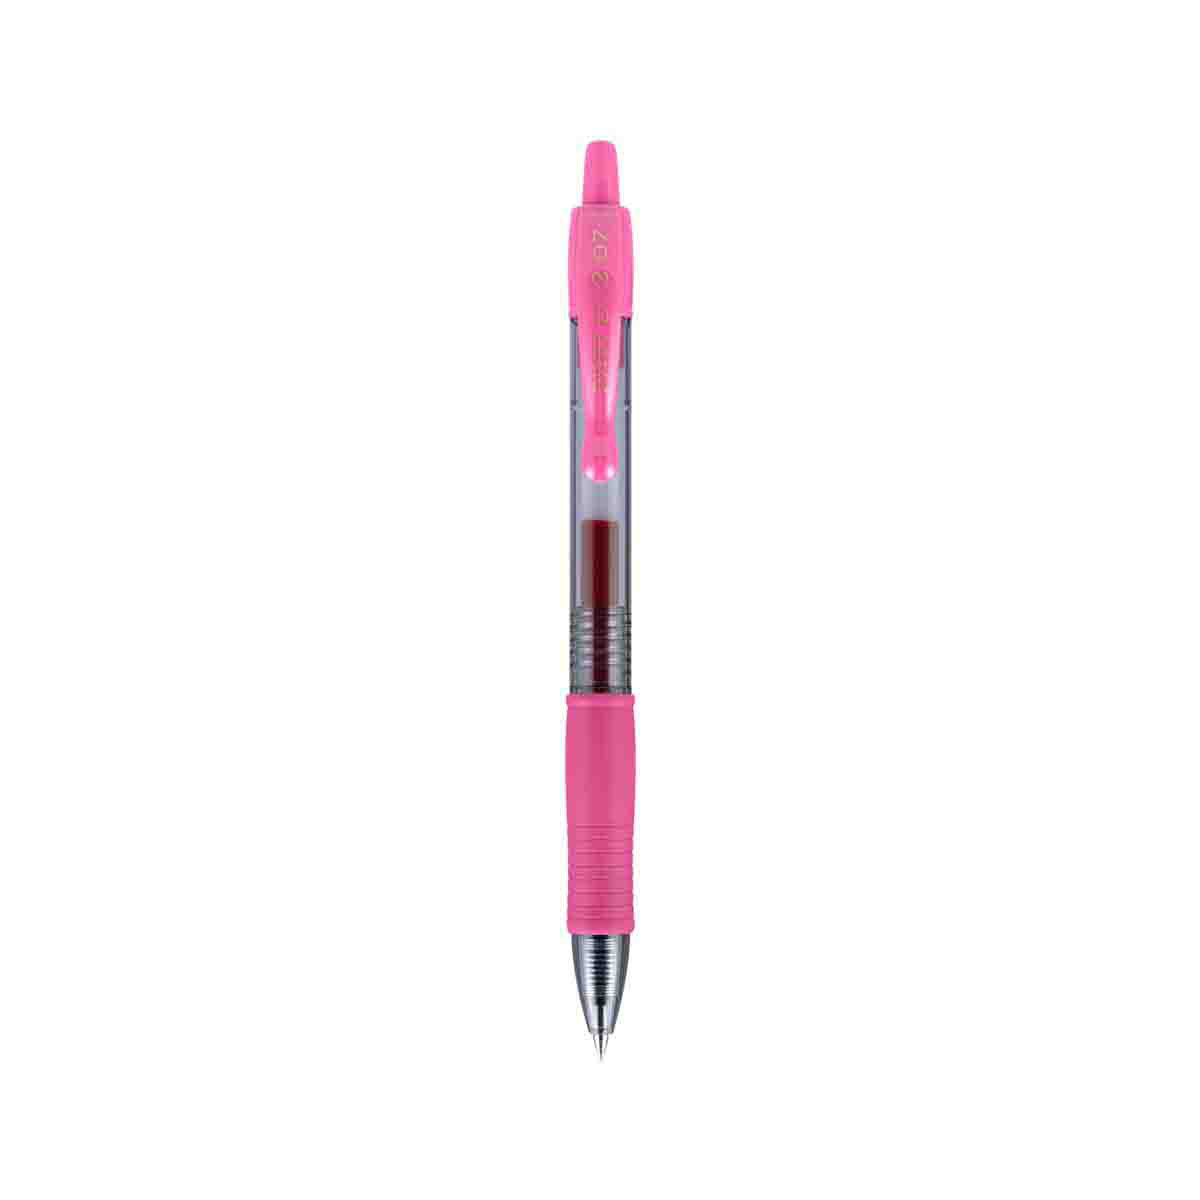 Pilot G2 Premium Retractable Gel Ink Pens, Fine Point, Single Pen, Pink